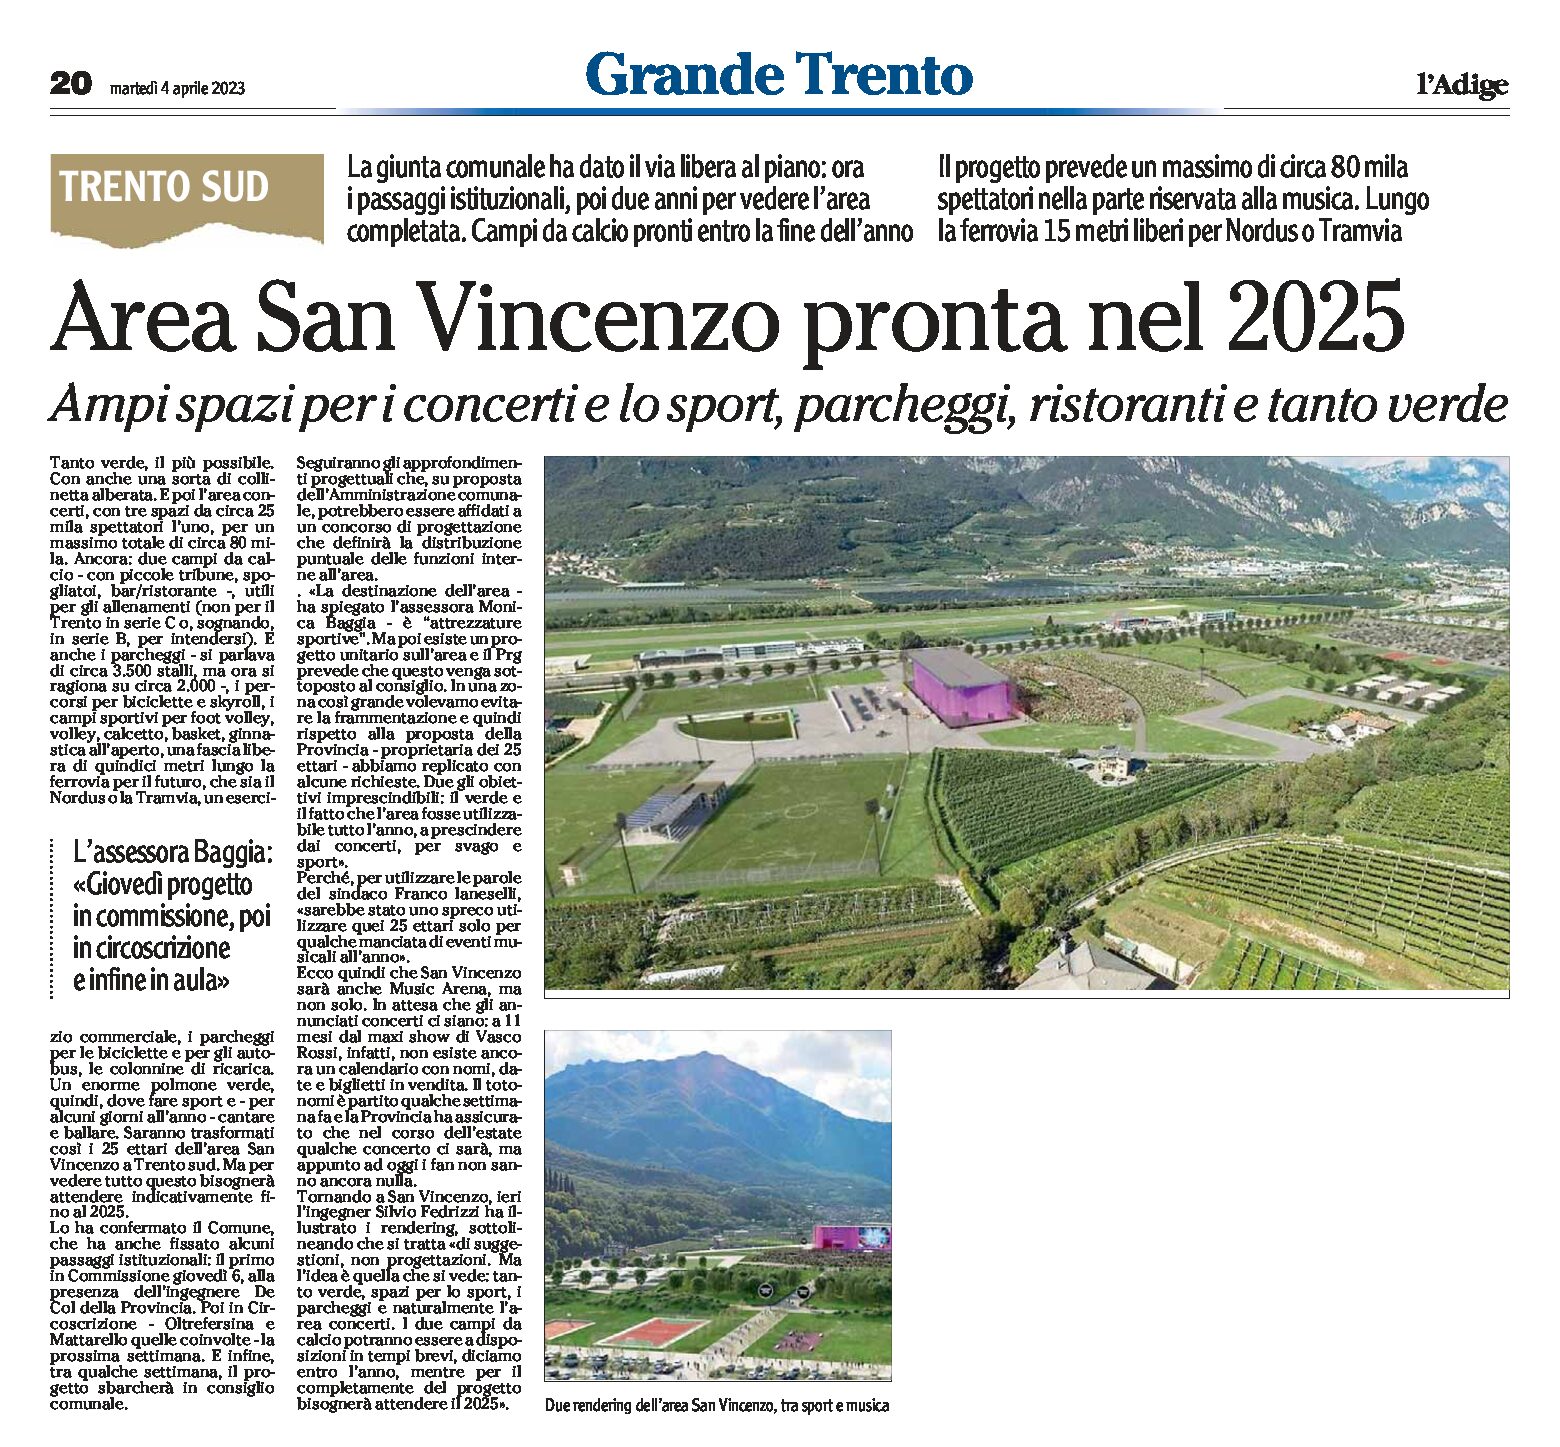 Trento sud, area San Vincenzo: pronta nel 2025. Concerti, sport, parcheggi, ristoranti, verde